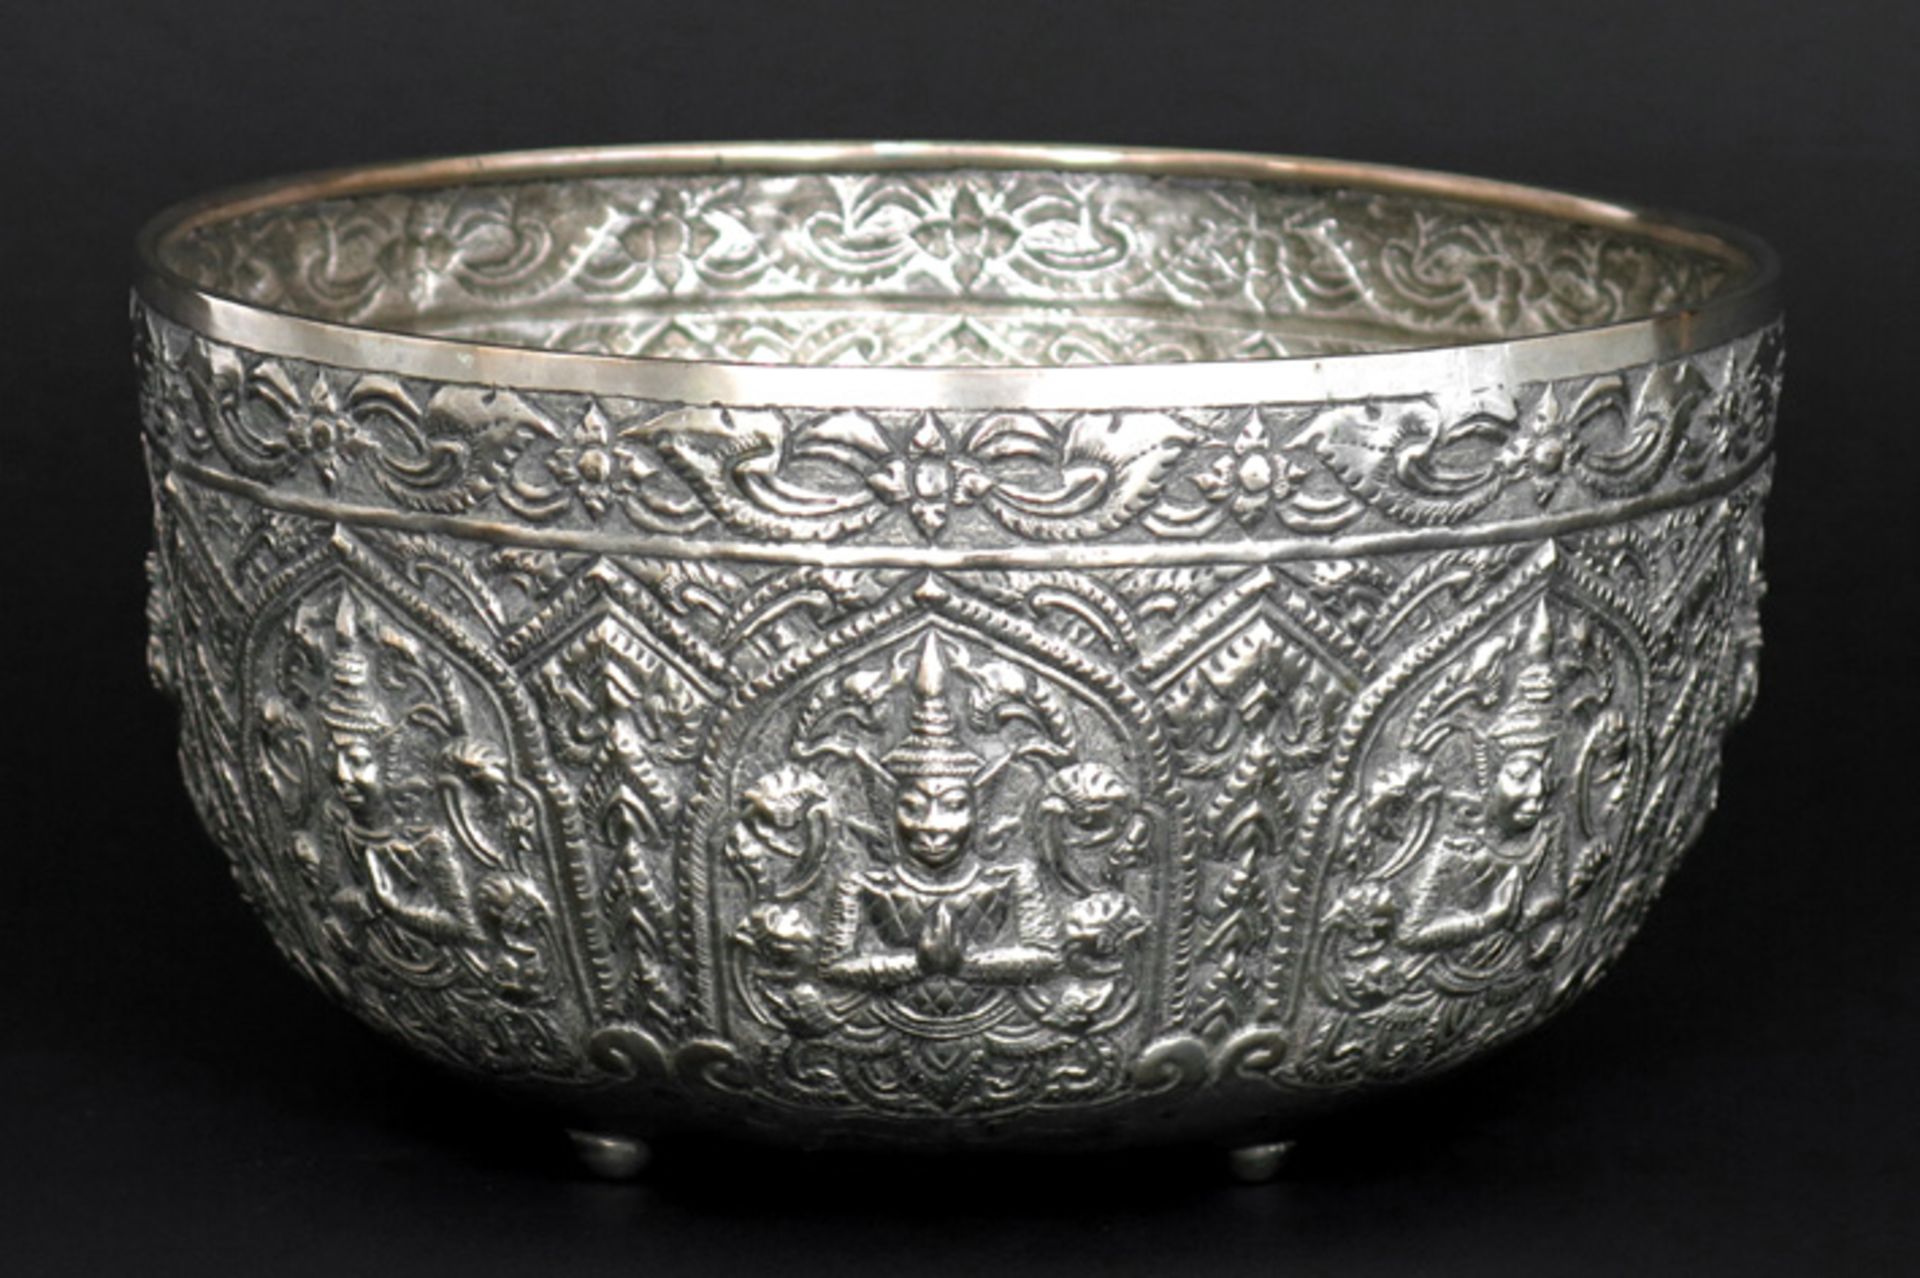 Siamese ceremoniële rijstbowl in zilver met typisch repoussé decor met rondom zittende figuren -